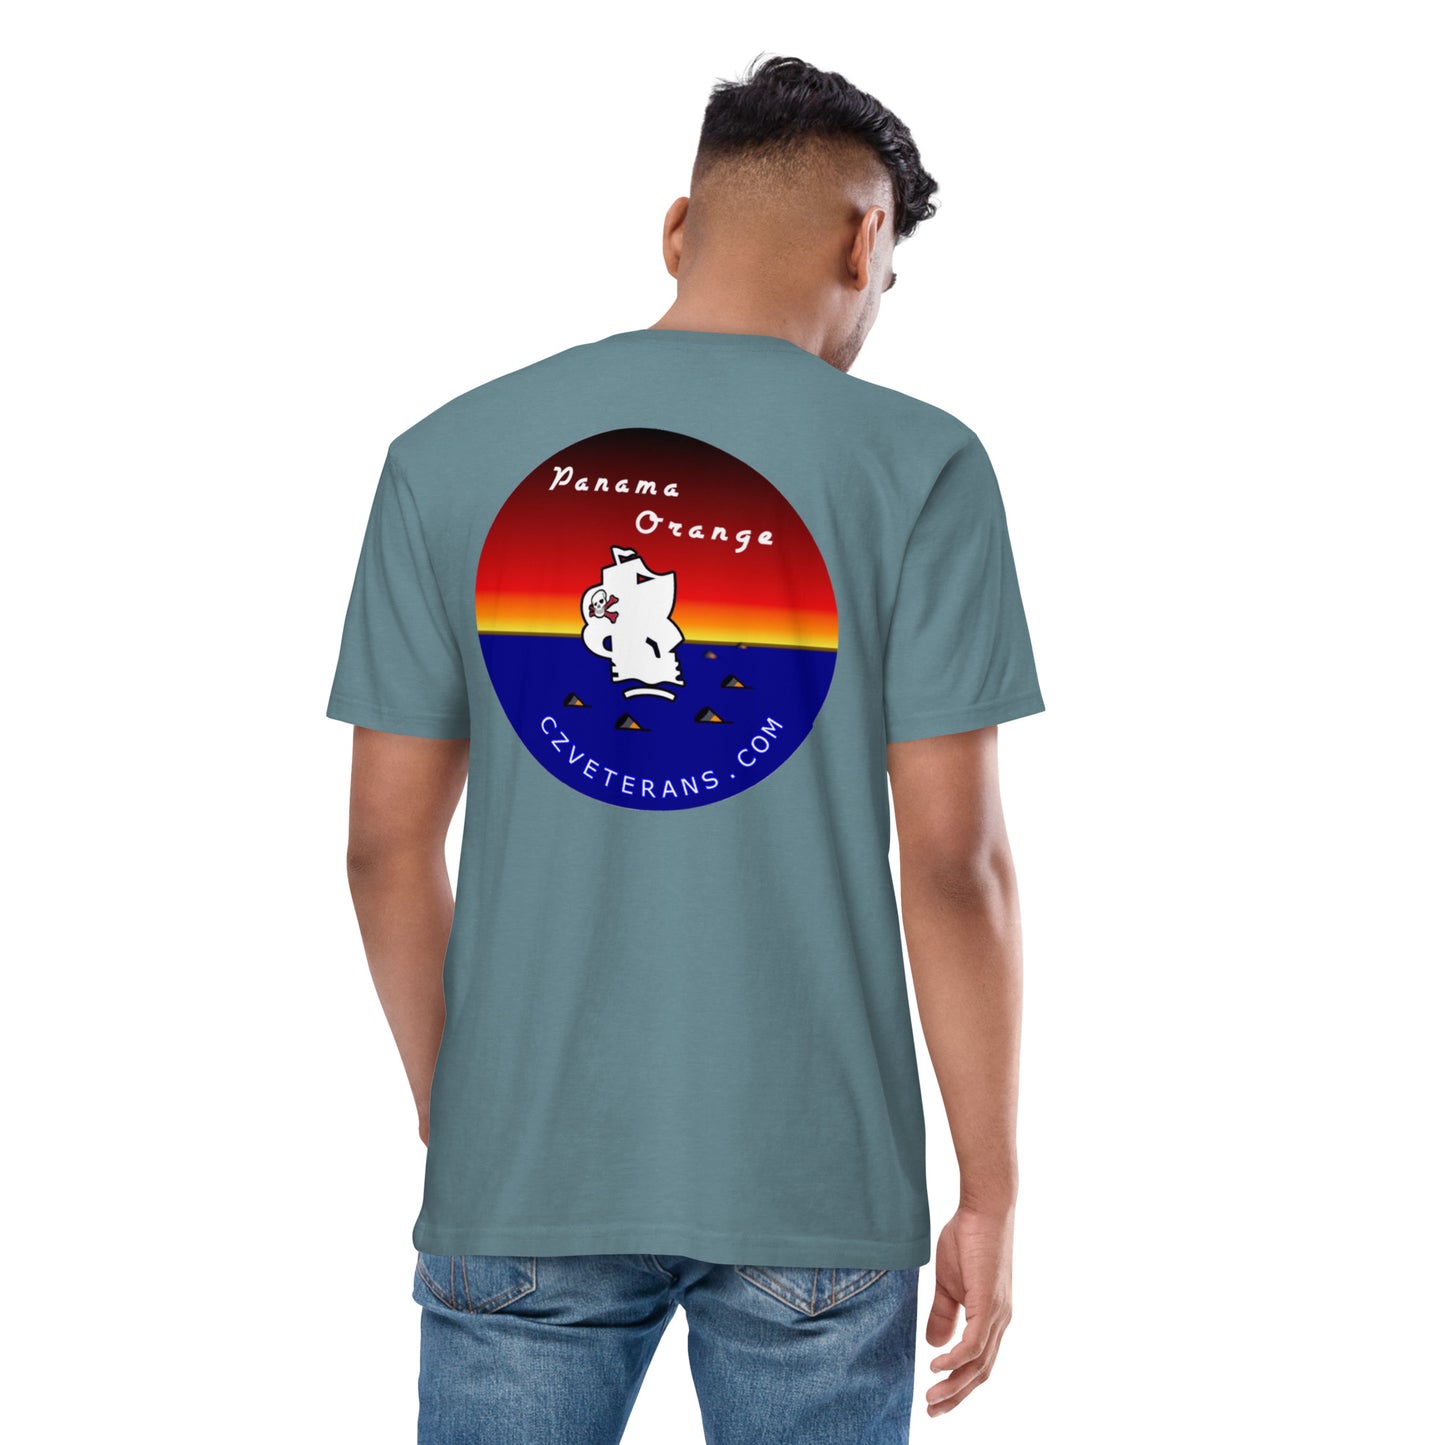 Panama Canal Zone Veterans - Men’s short sleeve Tshirt - premium heavyweight tee